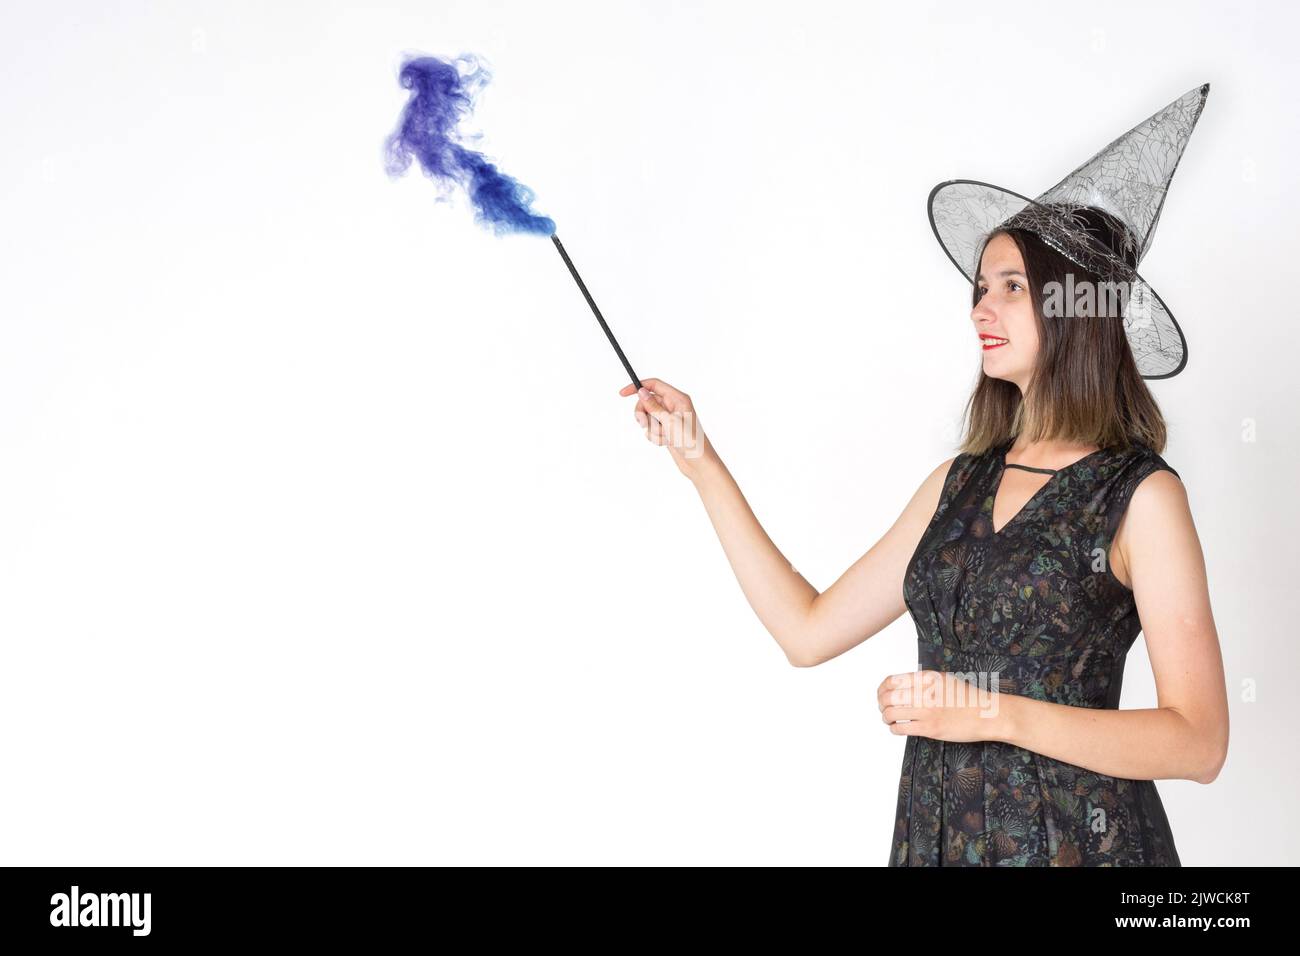 Une belle jeune fille dans un costume de sorcière, portant un chapeau, avec une baguette magique avec la fumée tourbillonnante colorée. La sorcière est attrayante. Joyeux Halloween. Banque D'Images